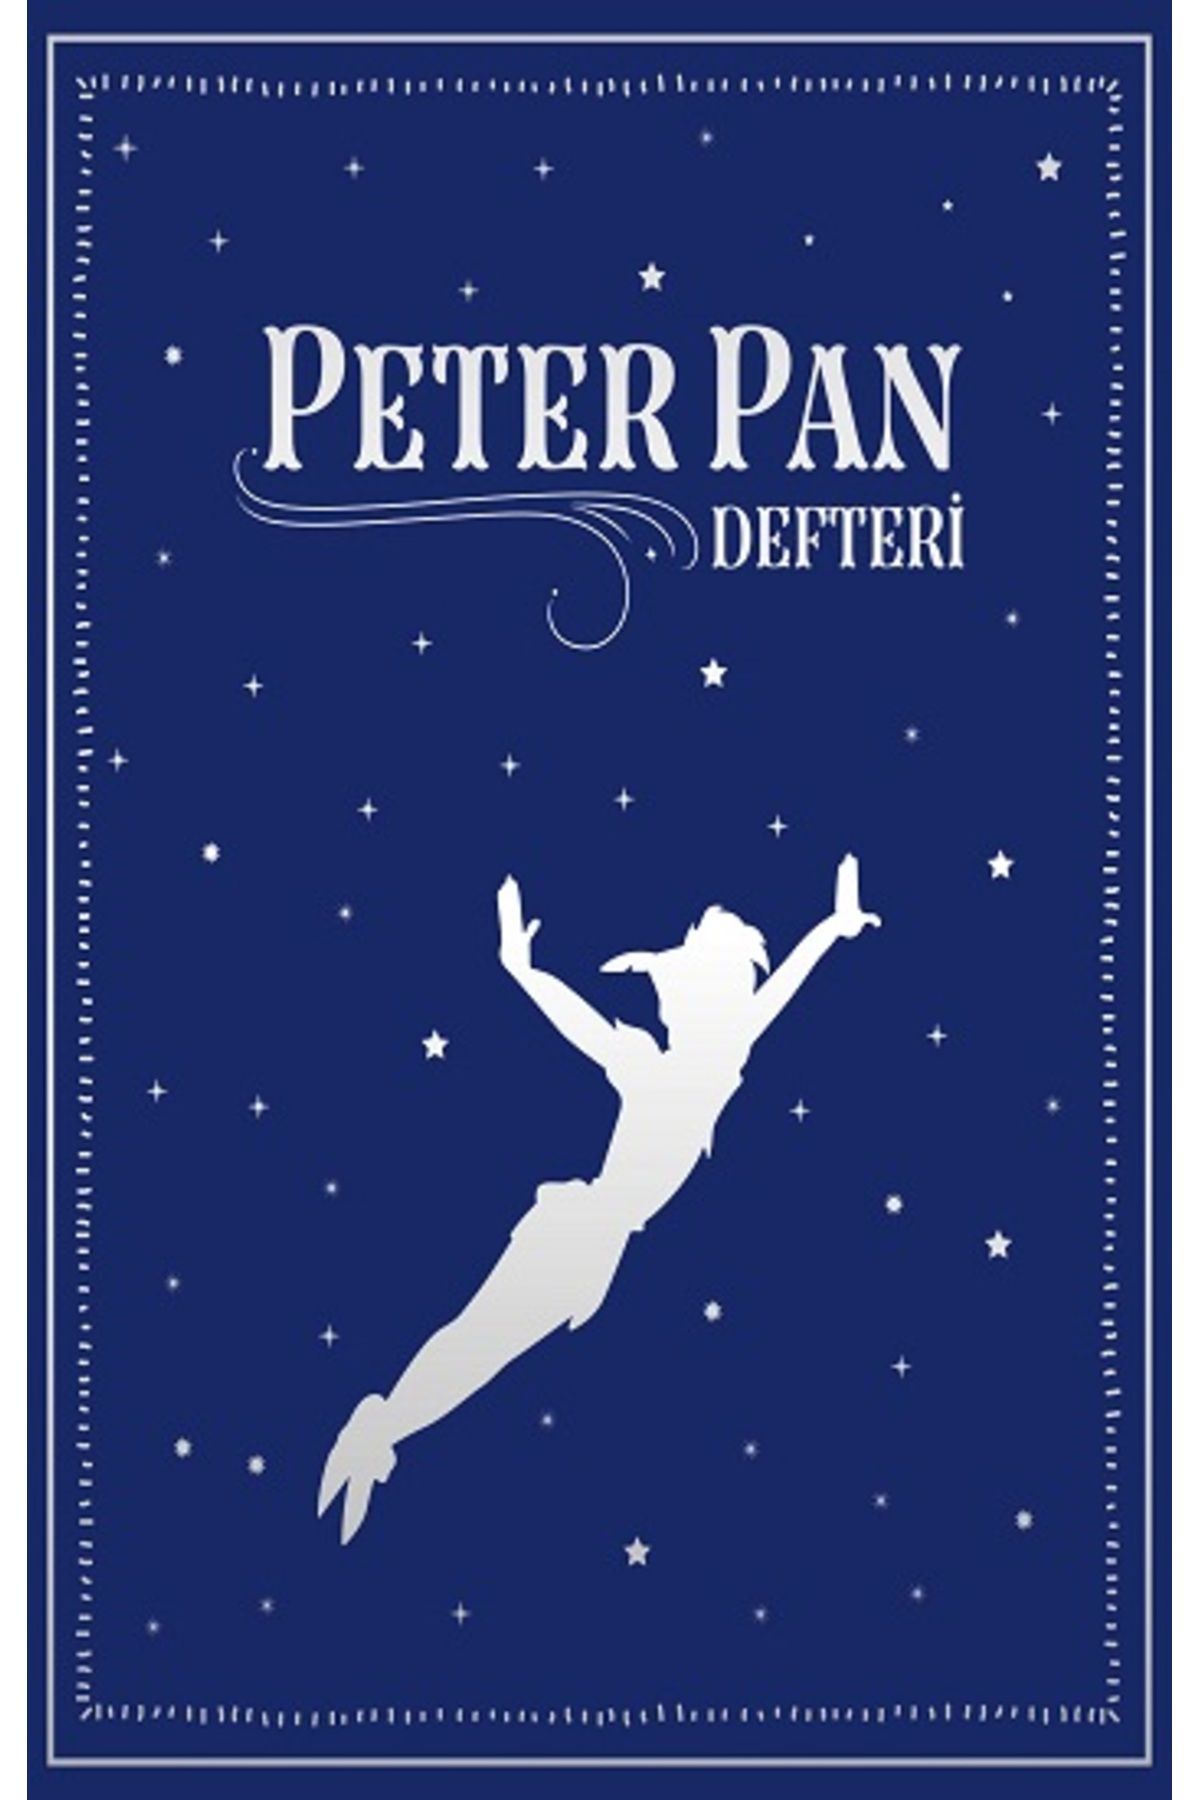 İthaki Yayınları Peter Pan Defteri (Ciltli) kitabı - Kolektif - İthaki Yayınları